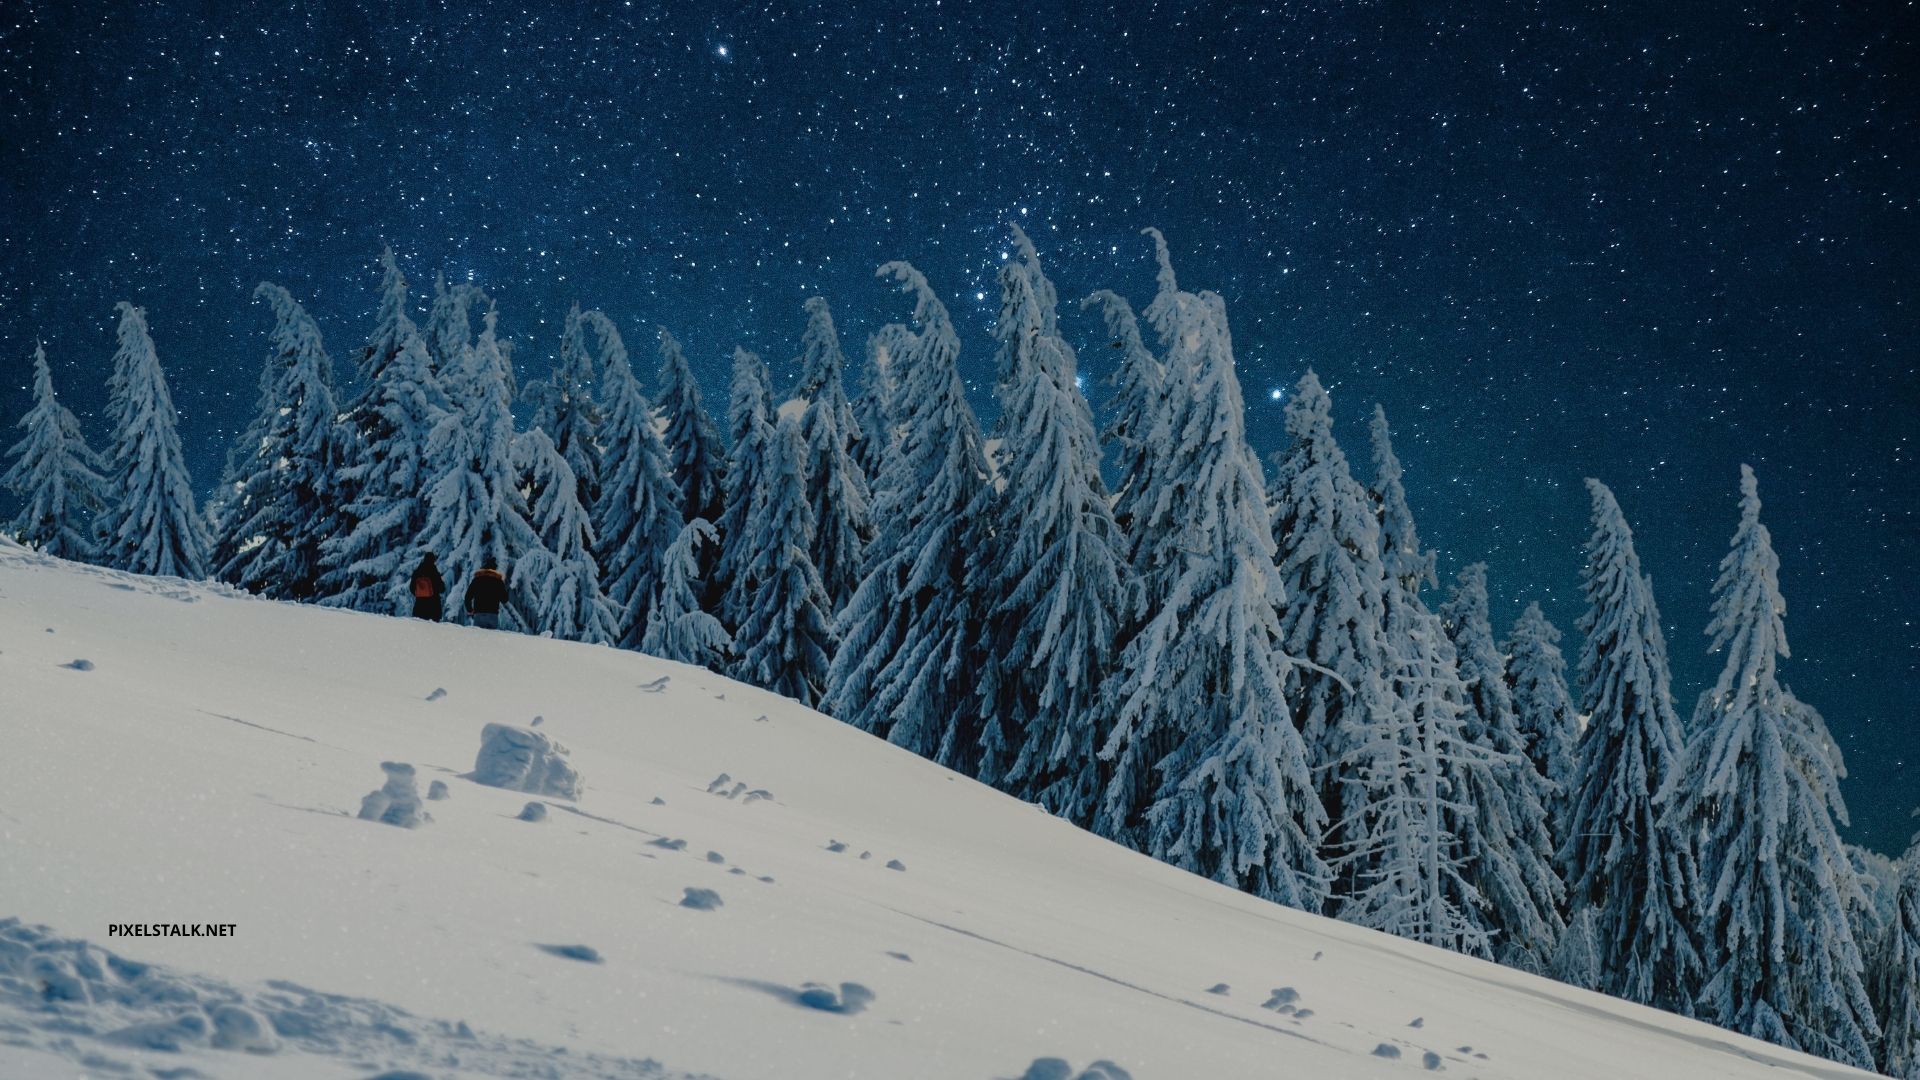 Winter Wonderland Wallpapers for Desktop  PixelsTalkNet